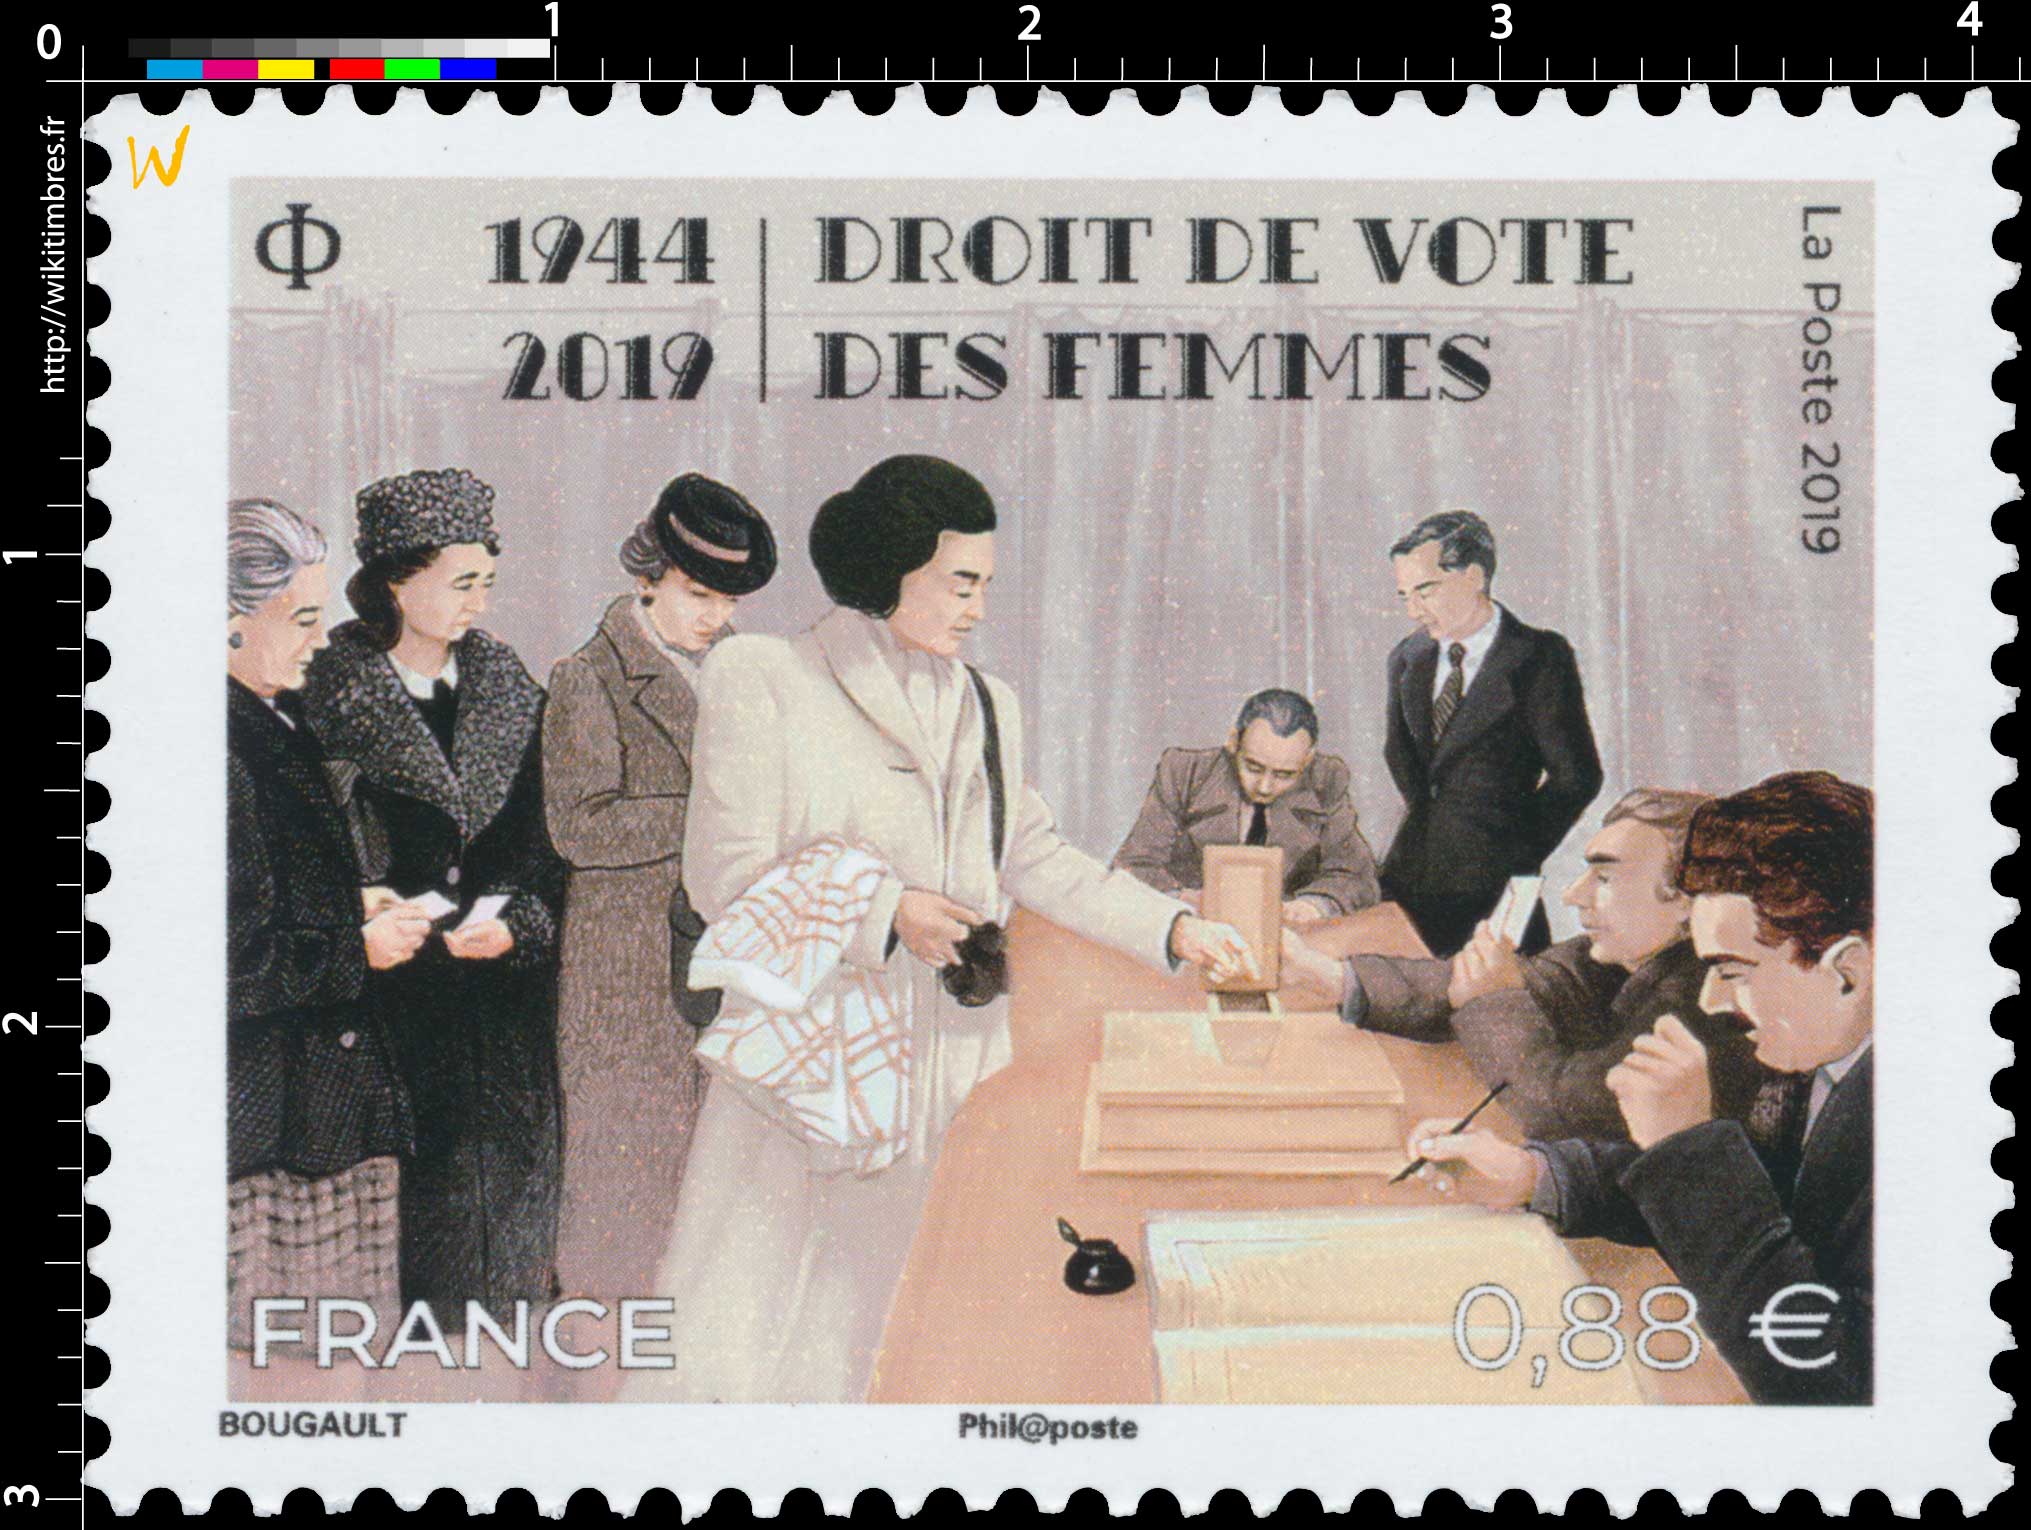 1944-2019 - DROIT DE VOTE DES FEMMES